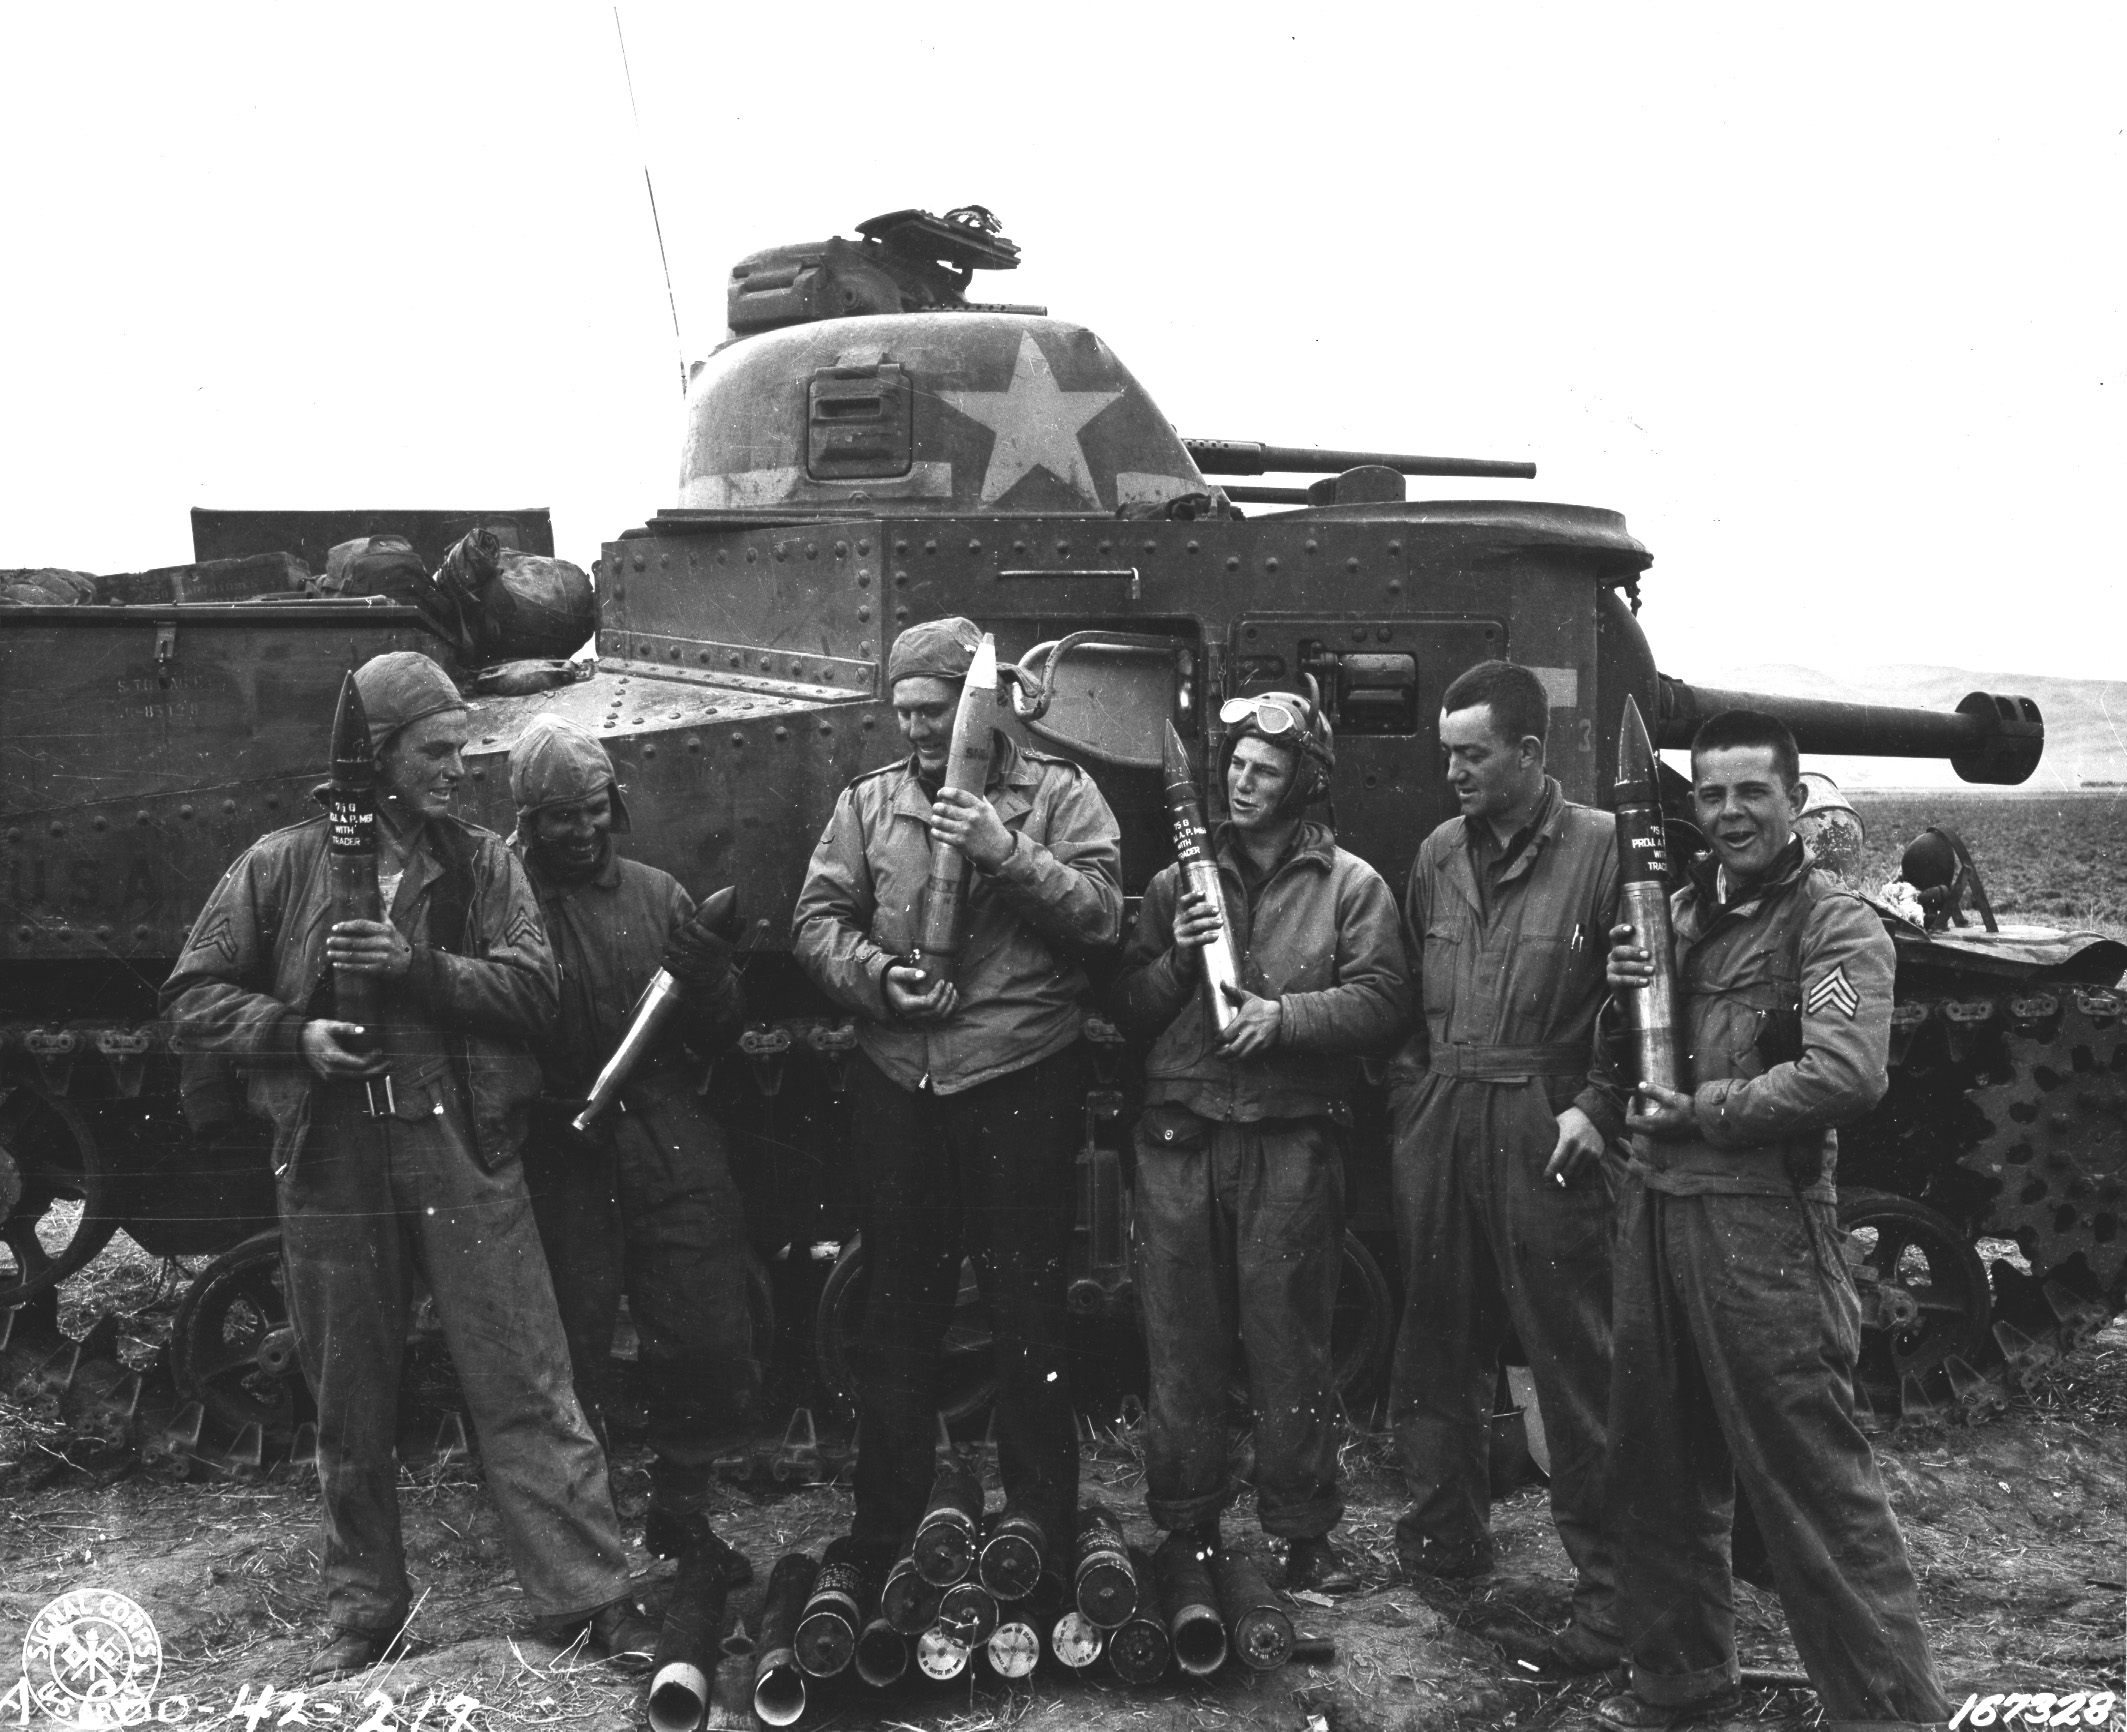 Crew of M3 Grant medium tank, US 13th Armored Regiment, Souk el Arba, Tunisia, 23 Nov 1942 (US Army Signal Corps photo)